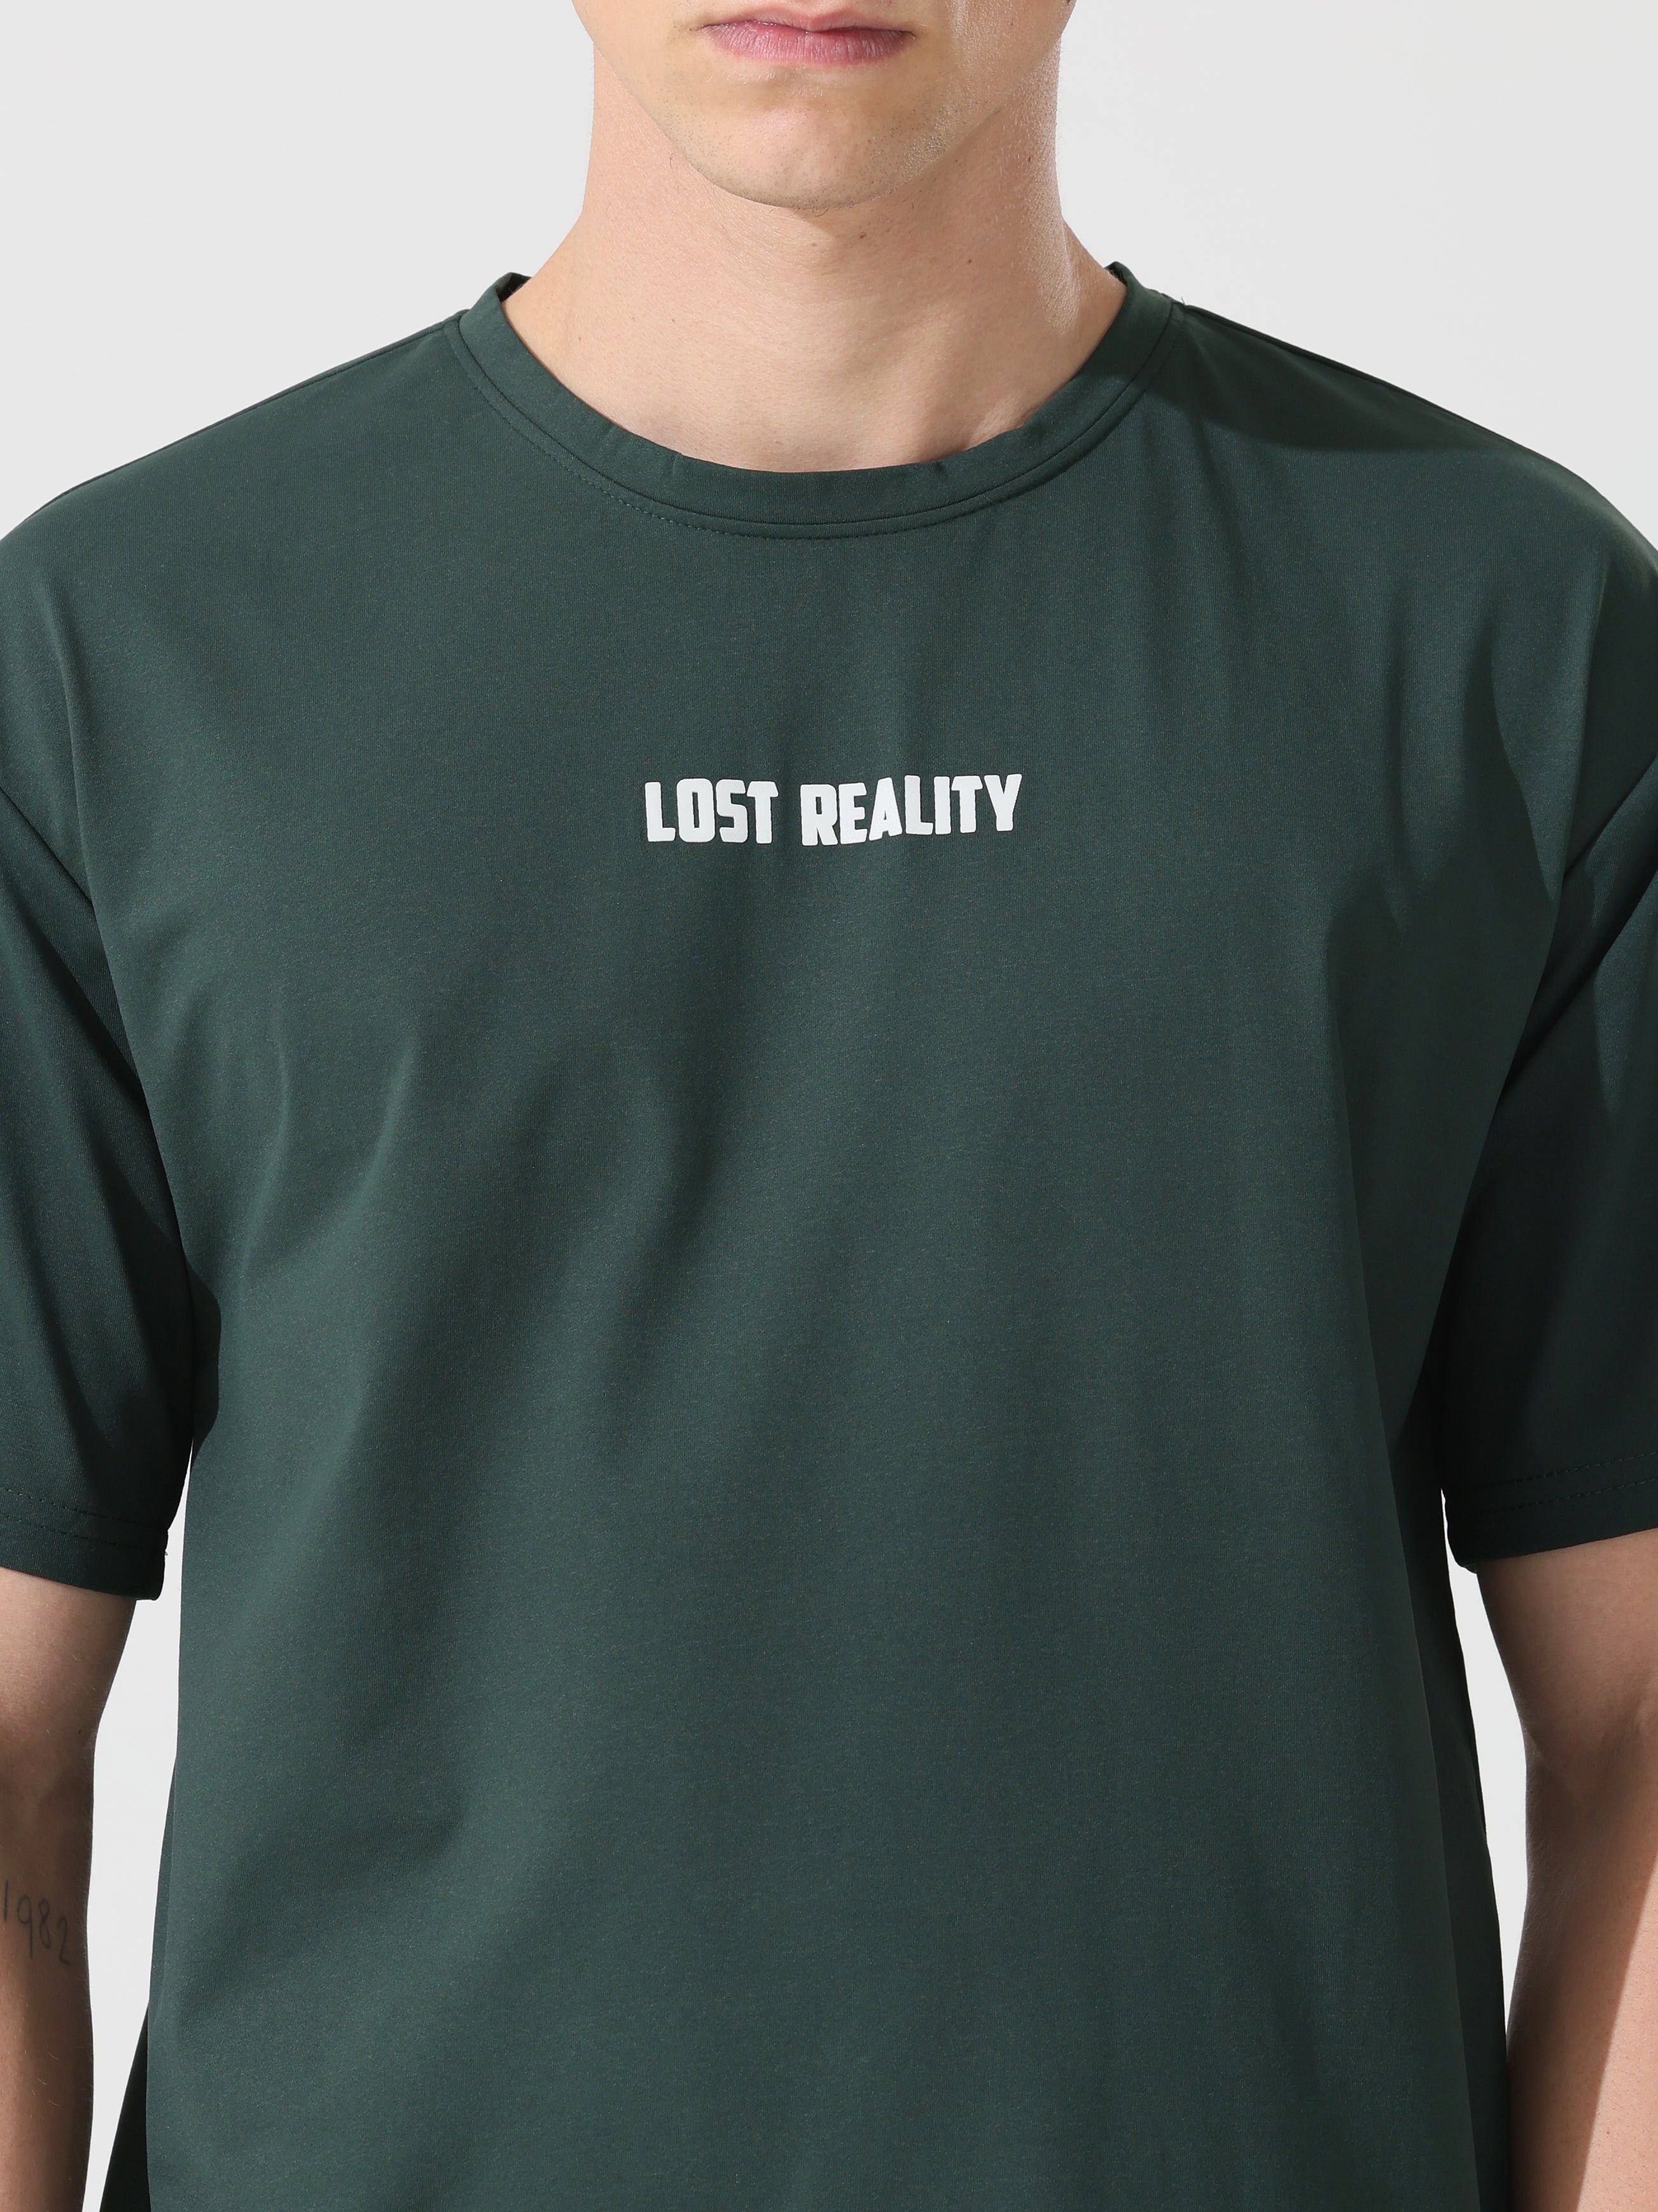 Lost reality Green half sleeve tee